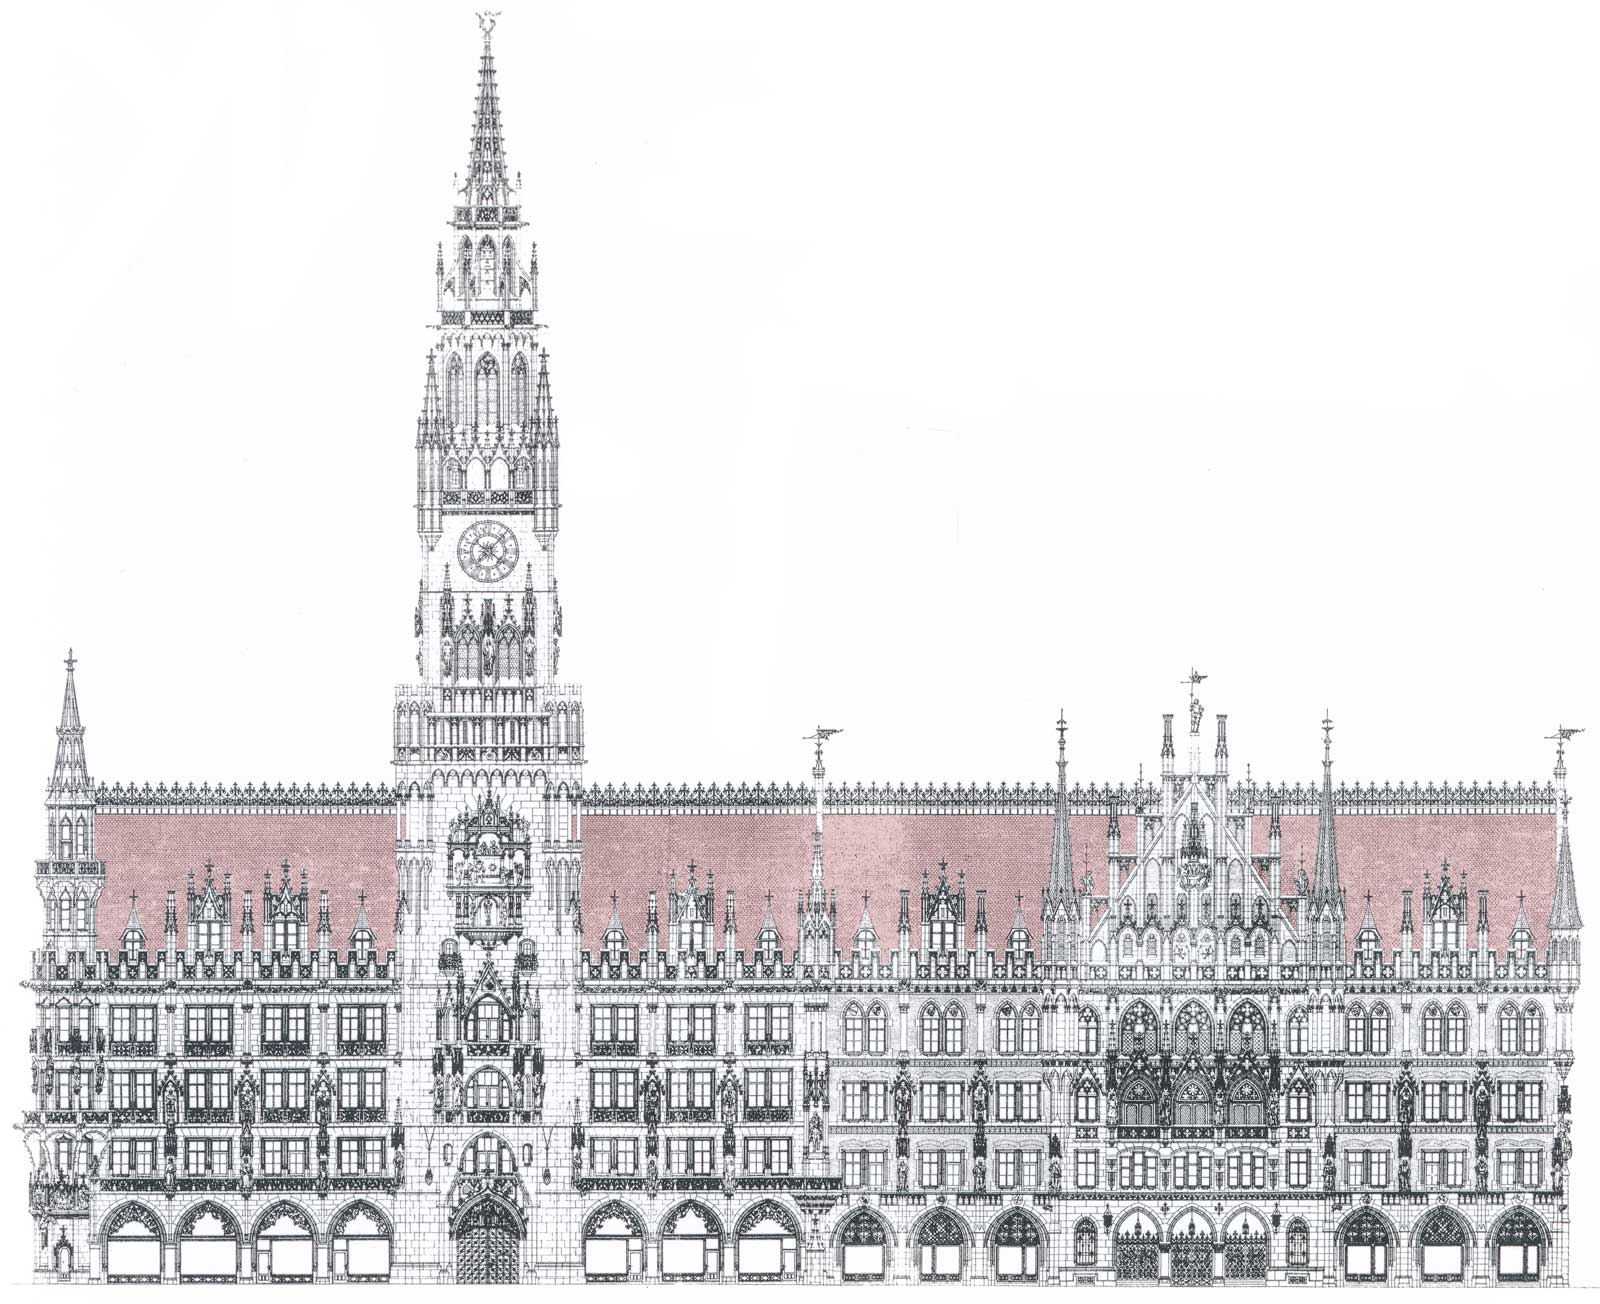 Neues Rathaus in München - Marienplatz